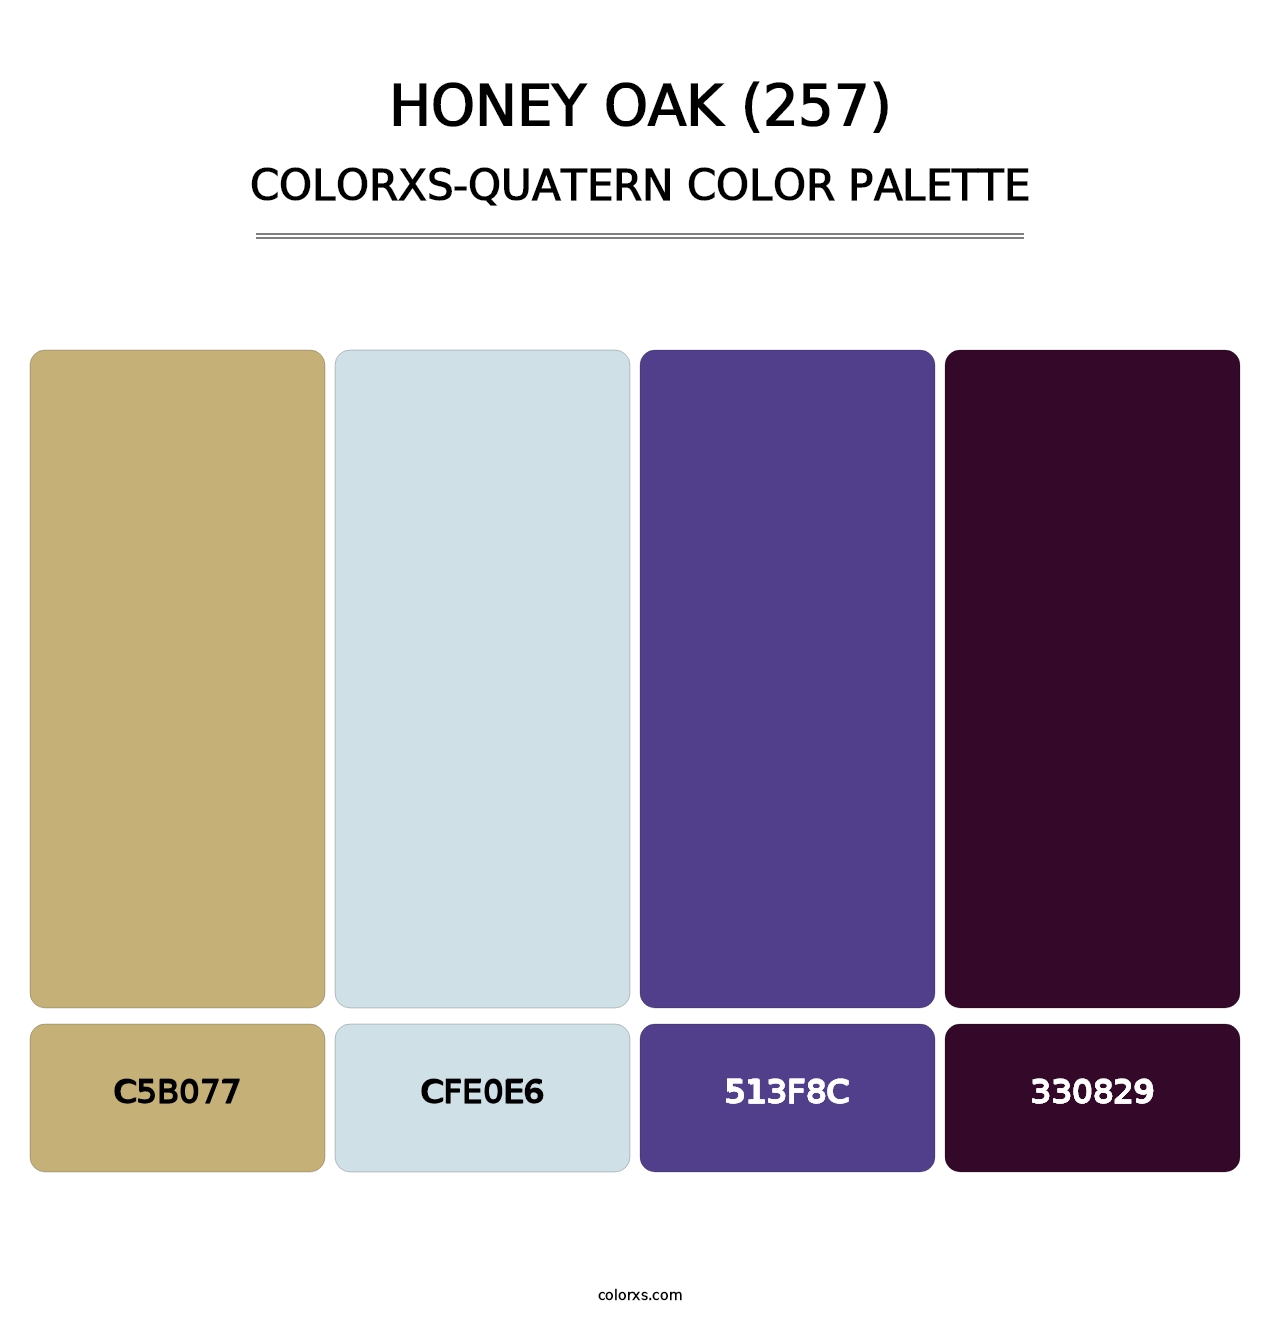 Honey Oak (257) - Colorxs Quatern Palette